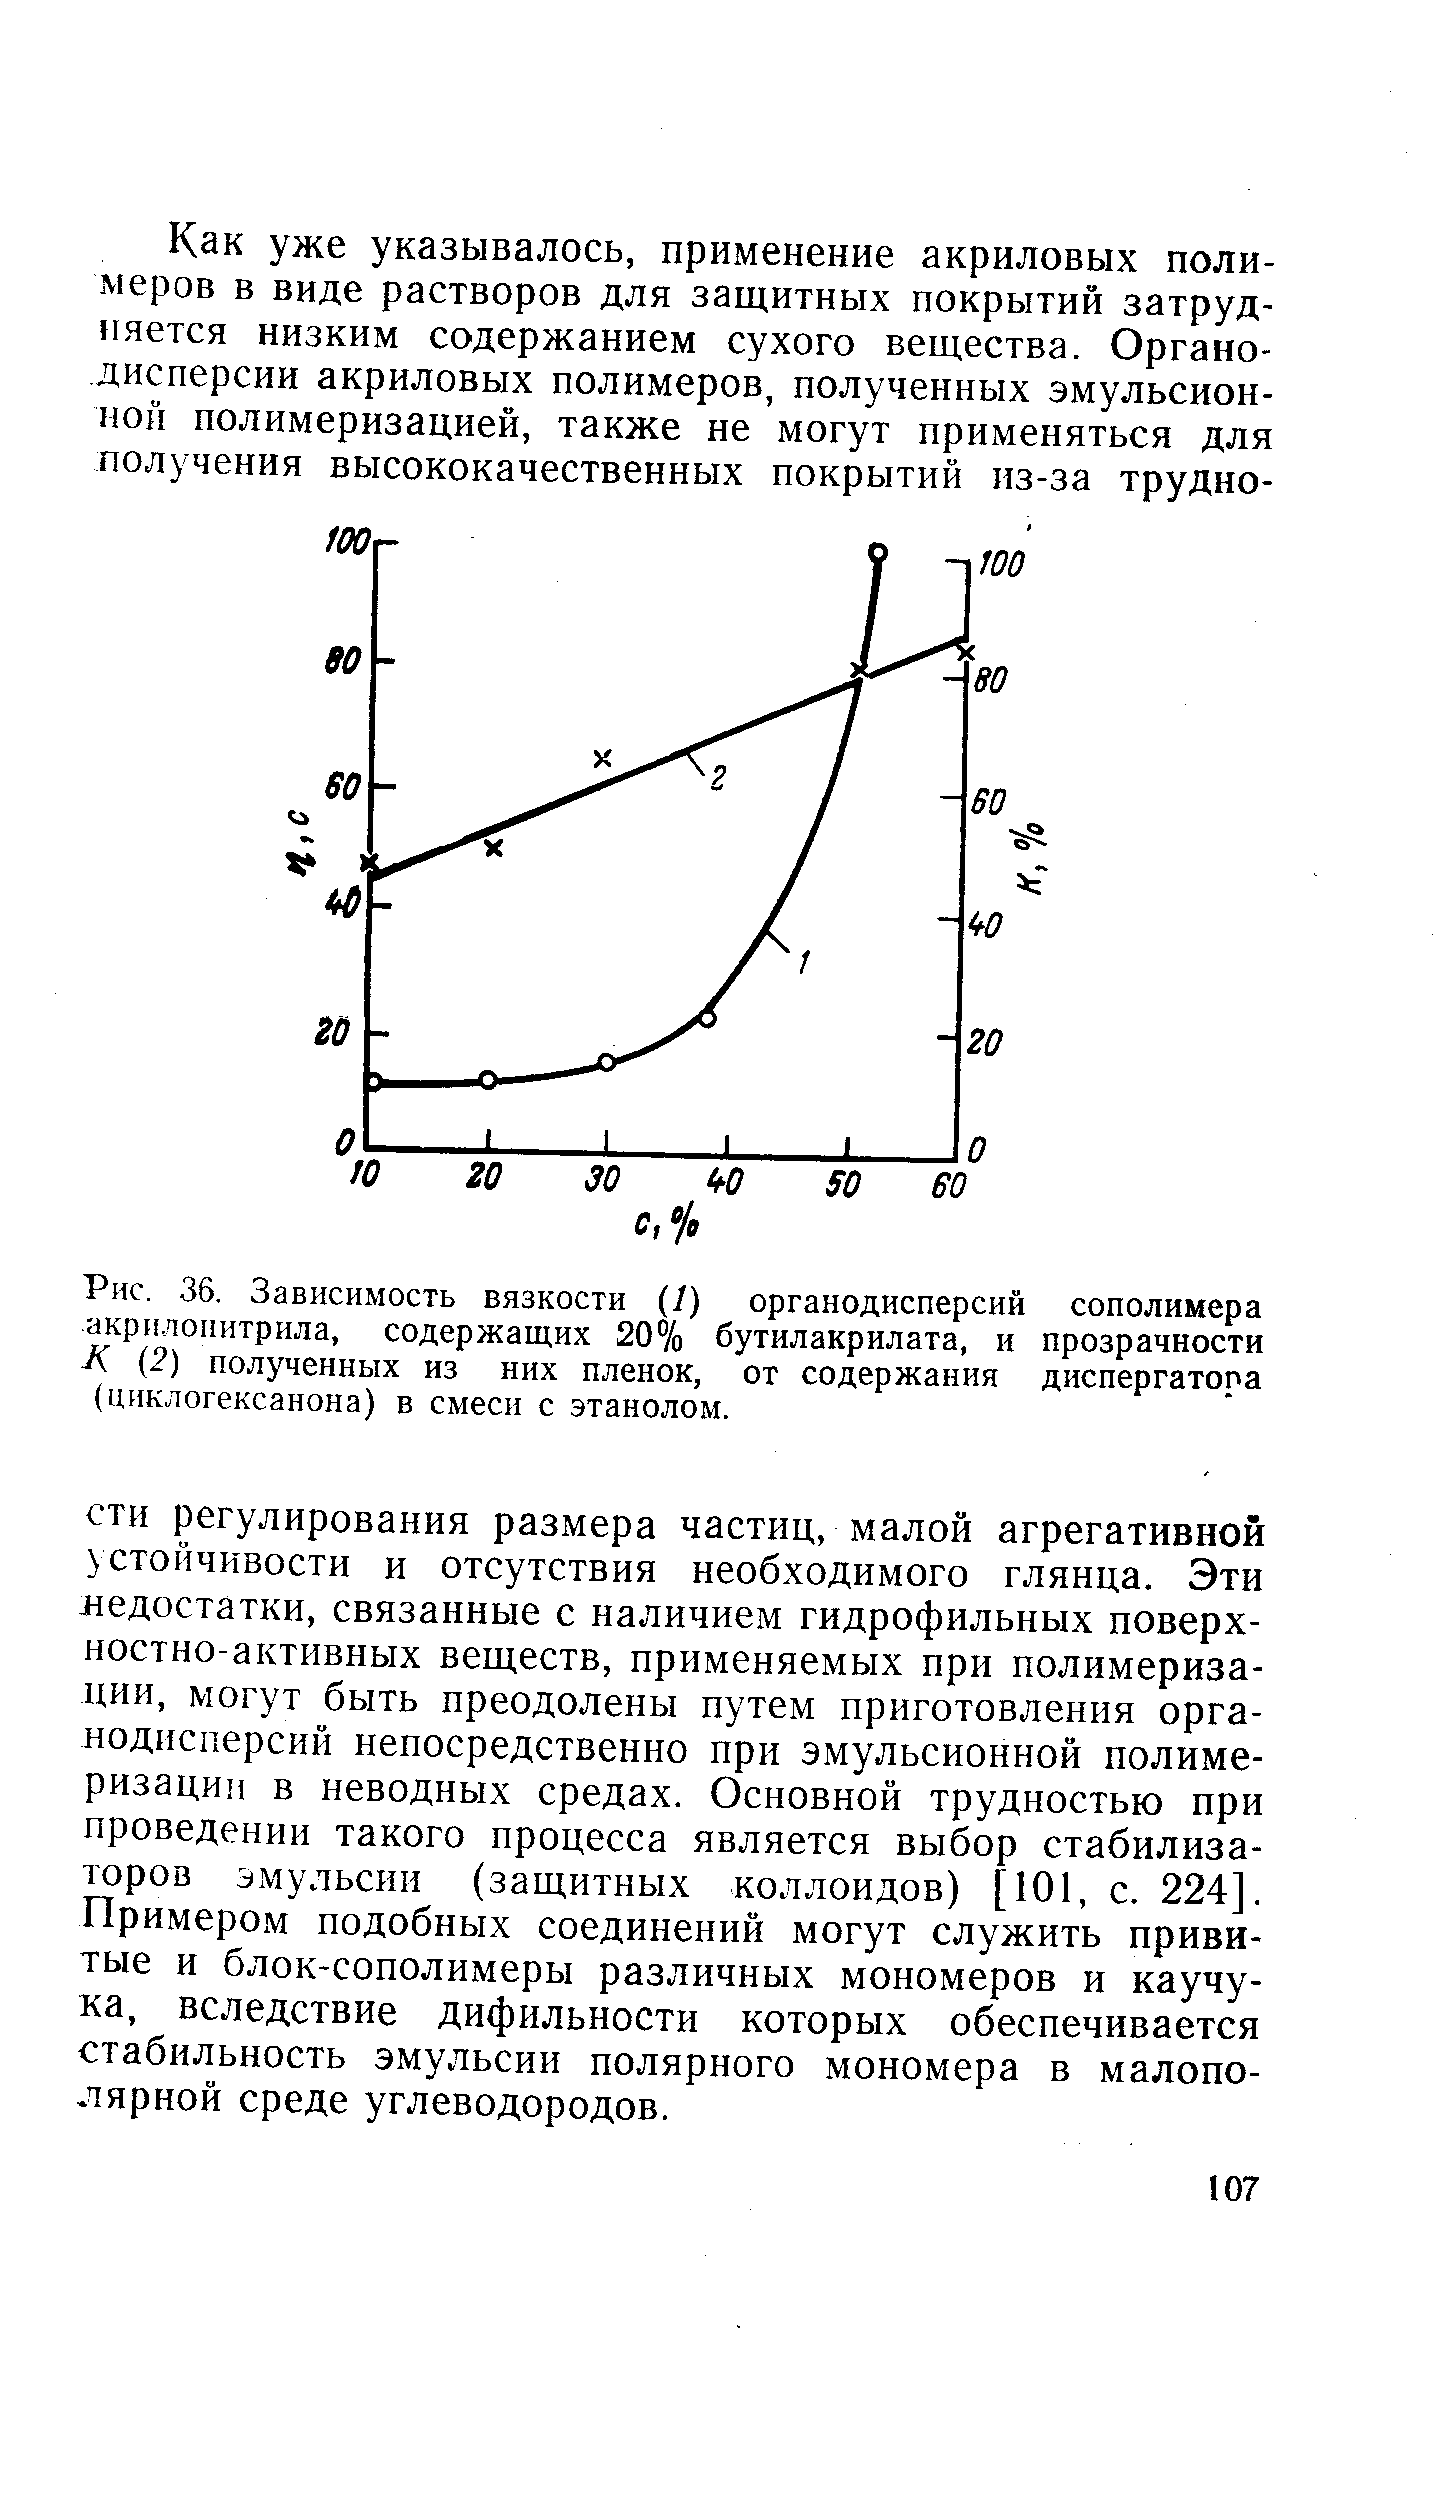 Рис. 36. Зависимость вязкости (/) органодисперсий сополимера акрилонитрила, содержащих 20% бутилакрилата, и прозрачности К (2) полученных из них пленок, от содержания диспергатора (циклогексанона) в смеси с этанолом.
